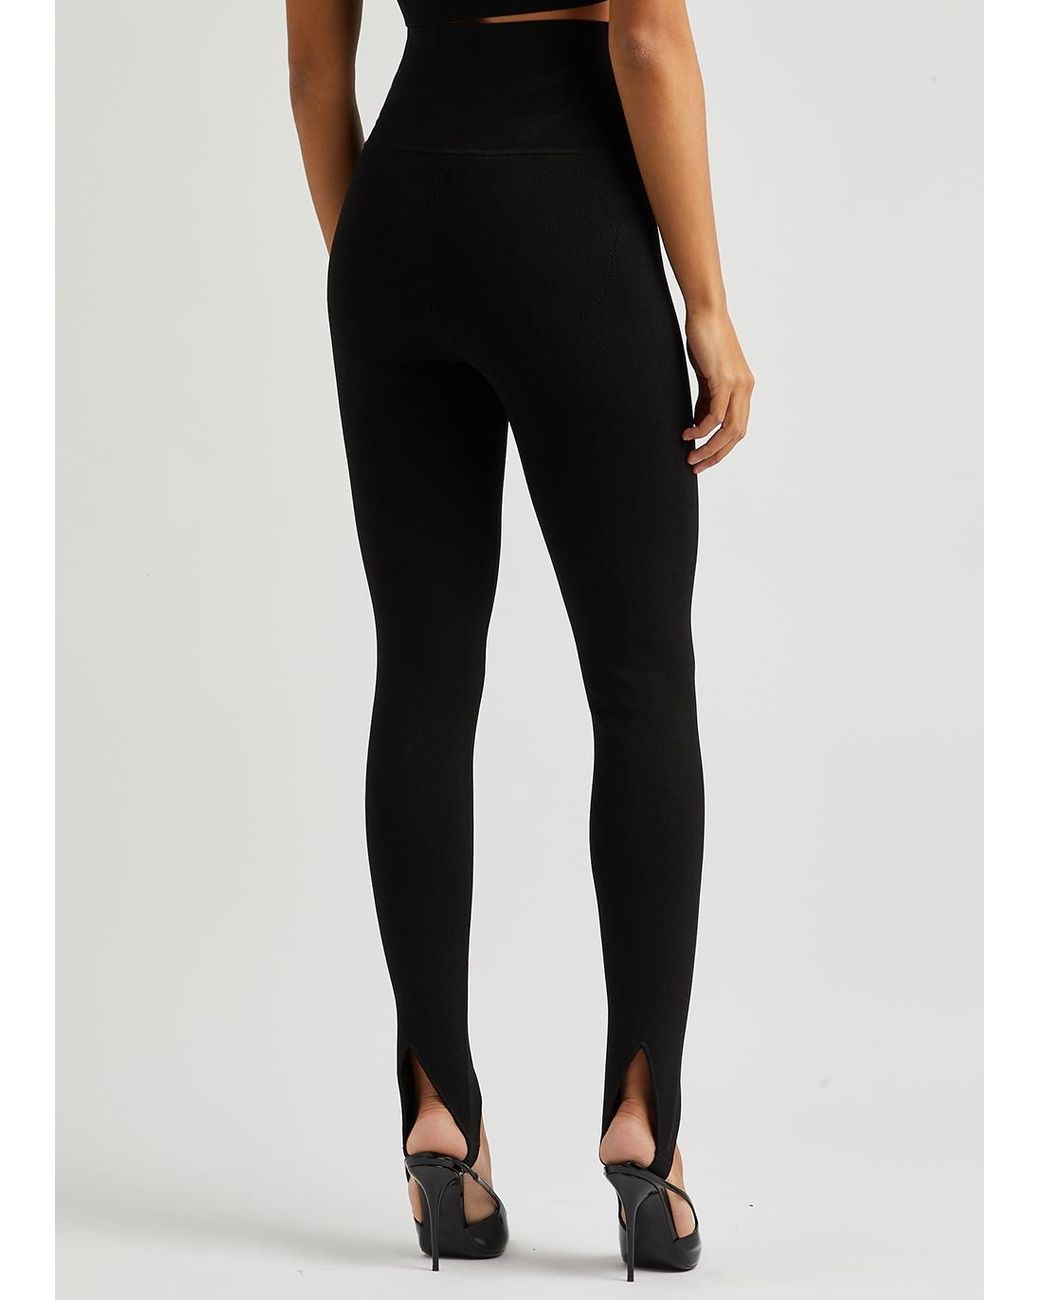 $490 VB Body Victoria Beckham Women's Black Slit-Hem Leggings